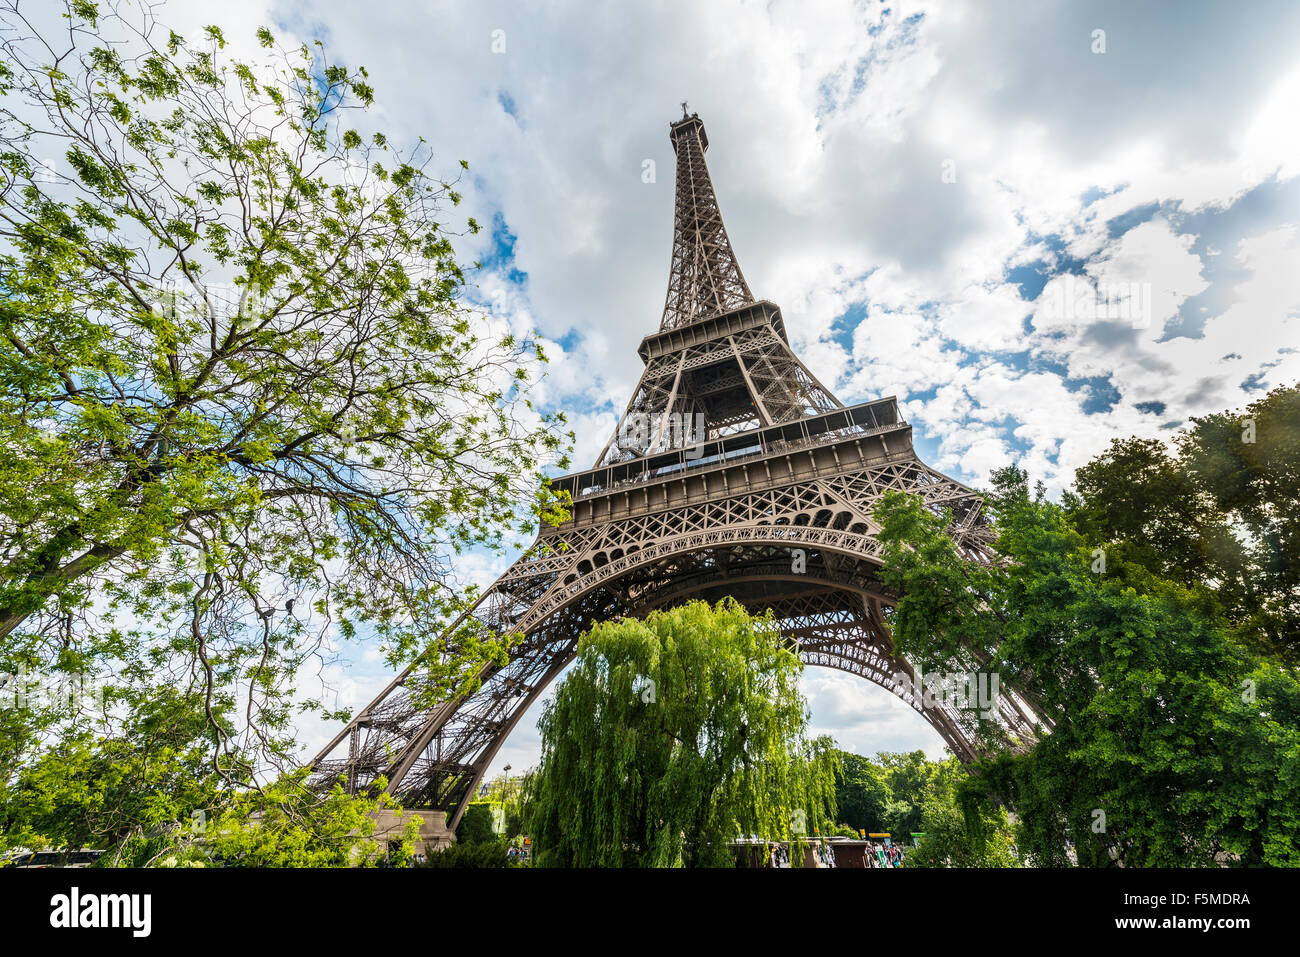 La Tour Eiffel, tour Eiffel, Paris, Ile-de-France, France Banque D'Images